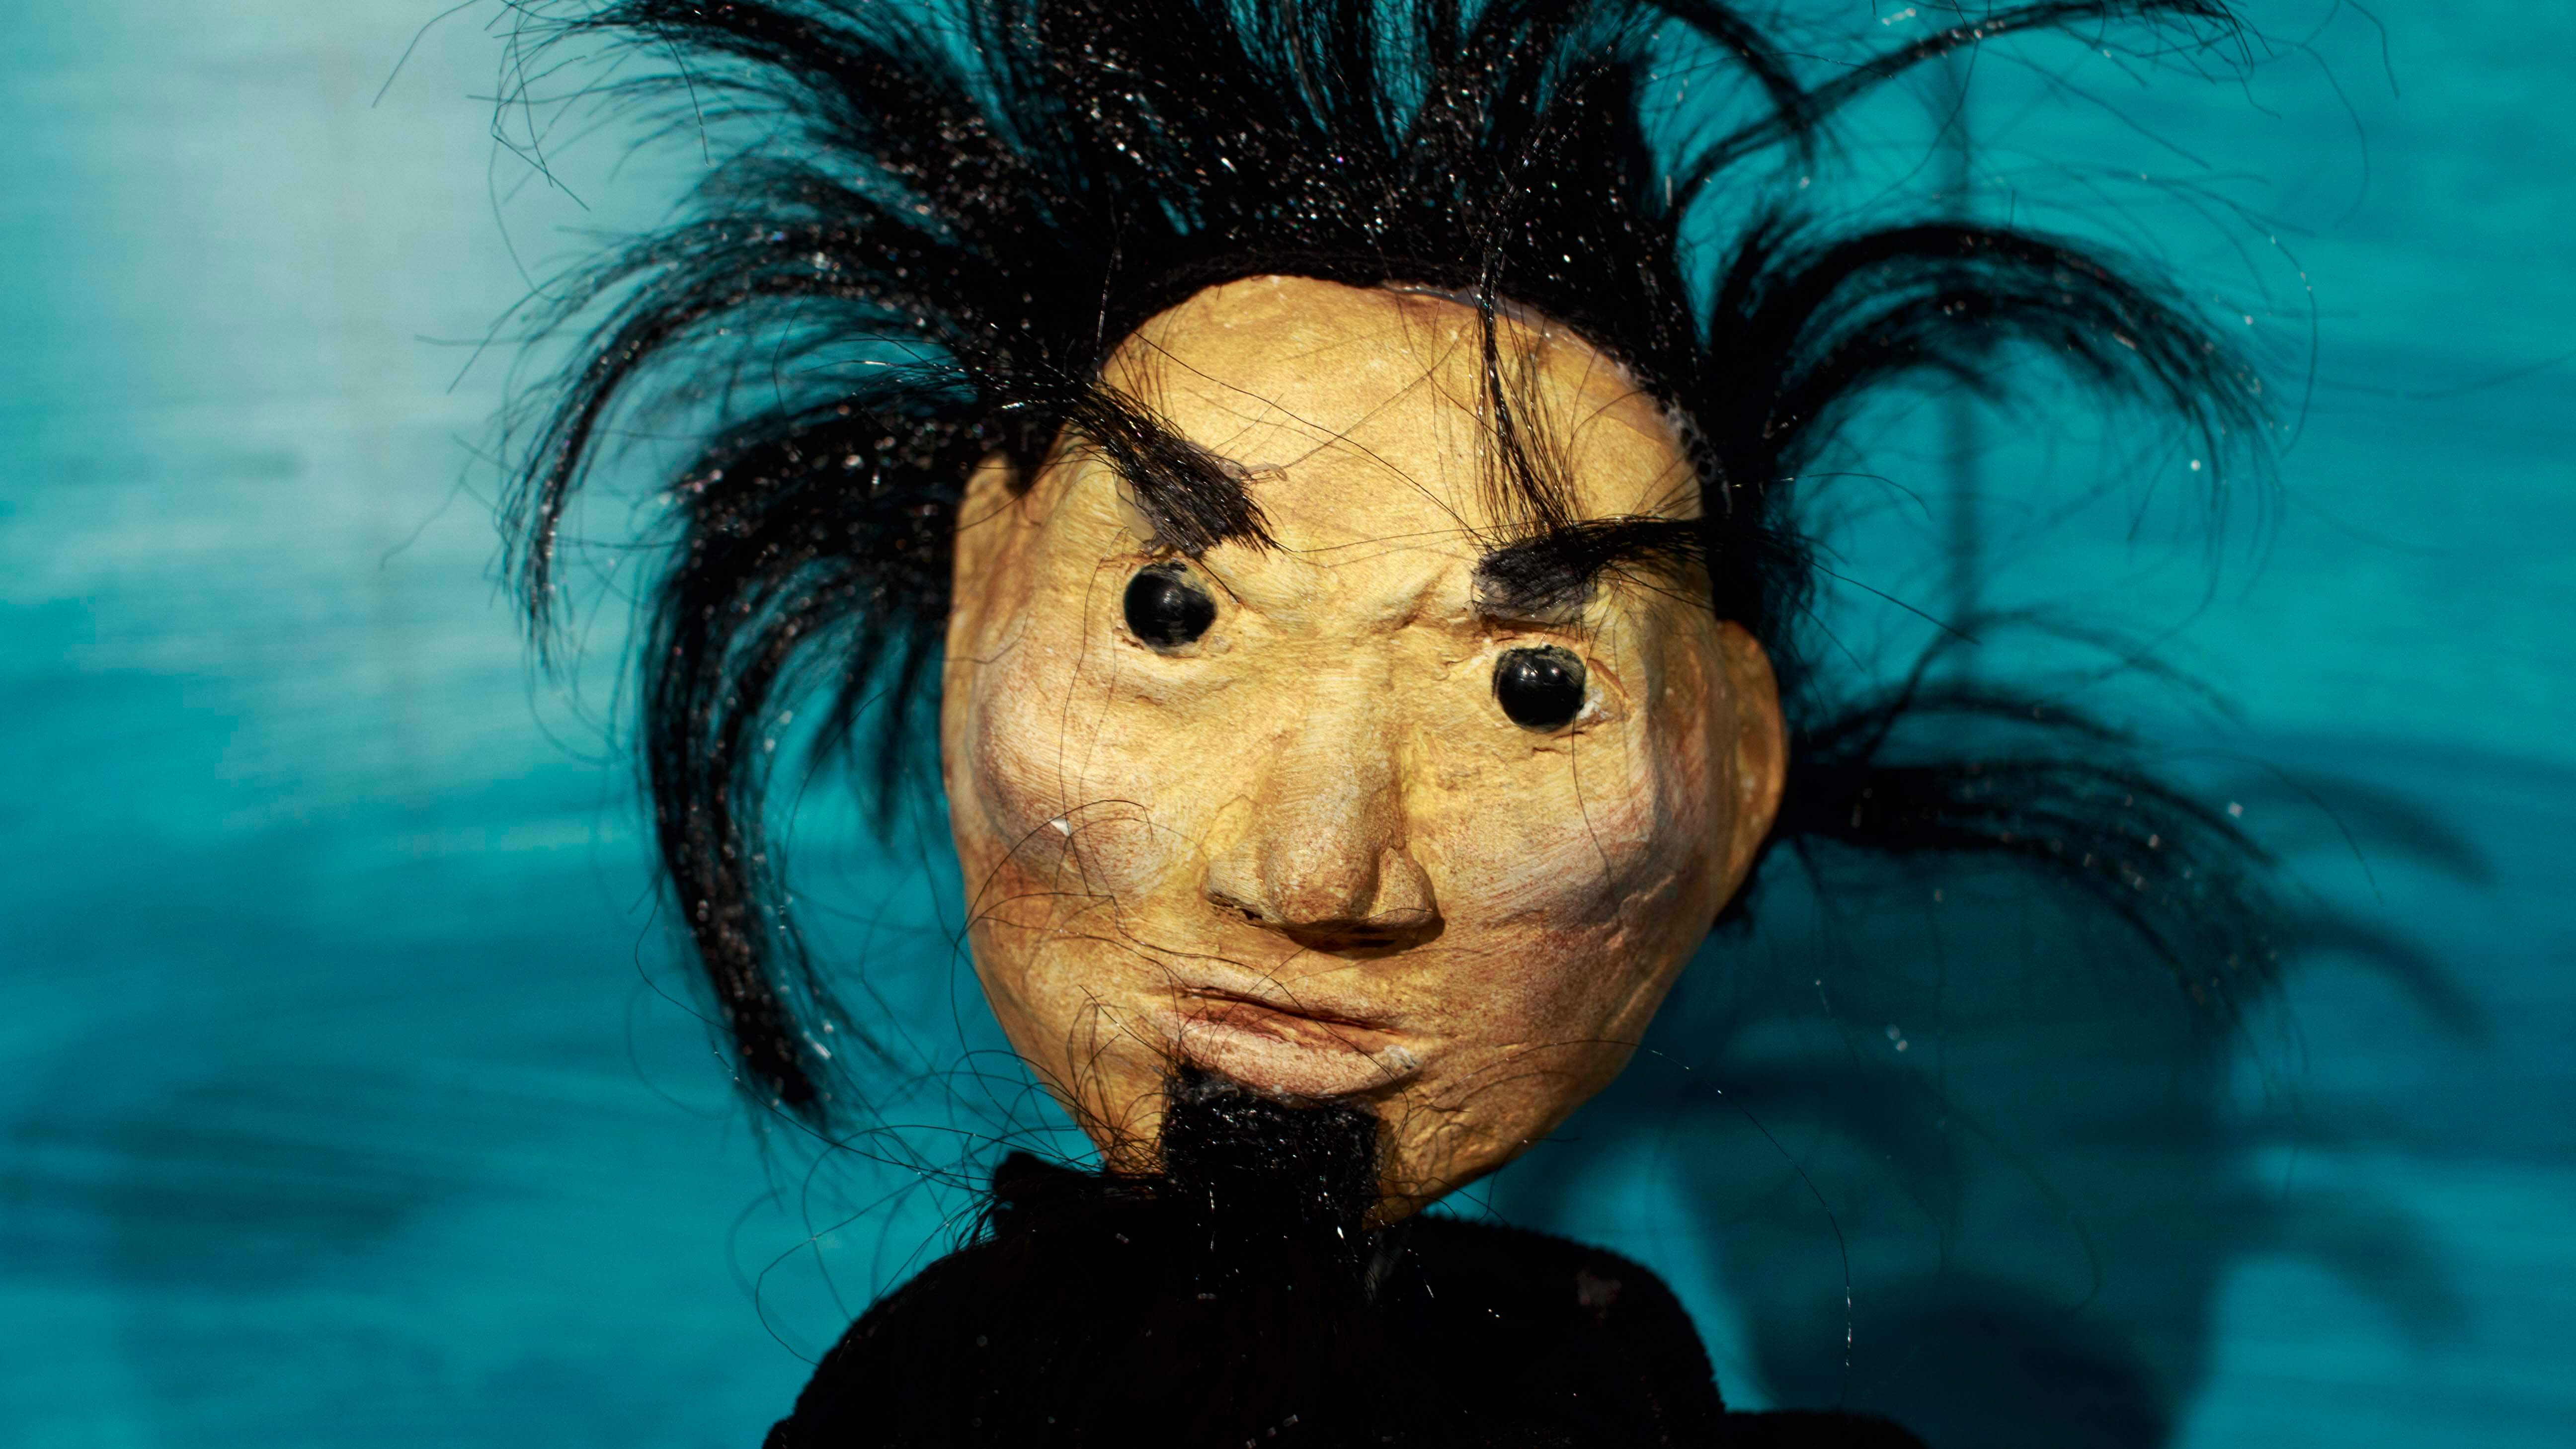 zbliżenie na twarz lalki przedstawiającej mężczyznę o czarnych sterczących włosach, z czarną brodą i czarnymi oczami, tło niebieskie, zdjęcie ze spektaklu dzielny kapitan ahab Teatru Gdynia Główna